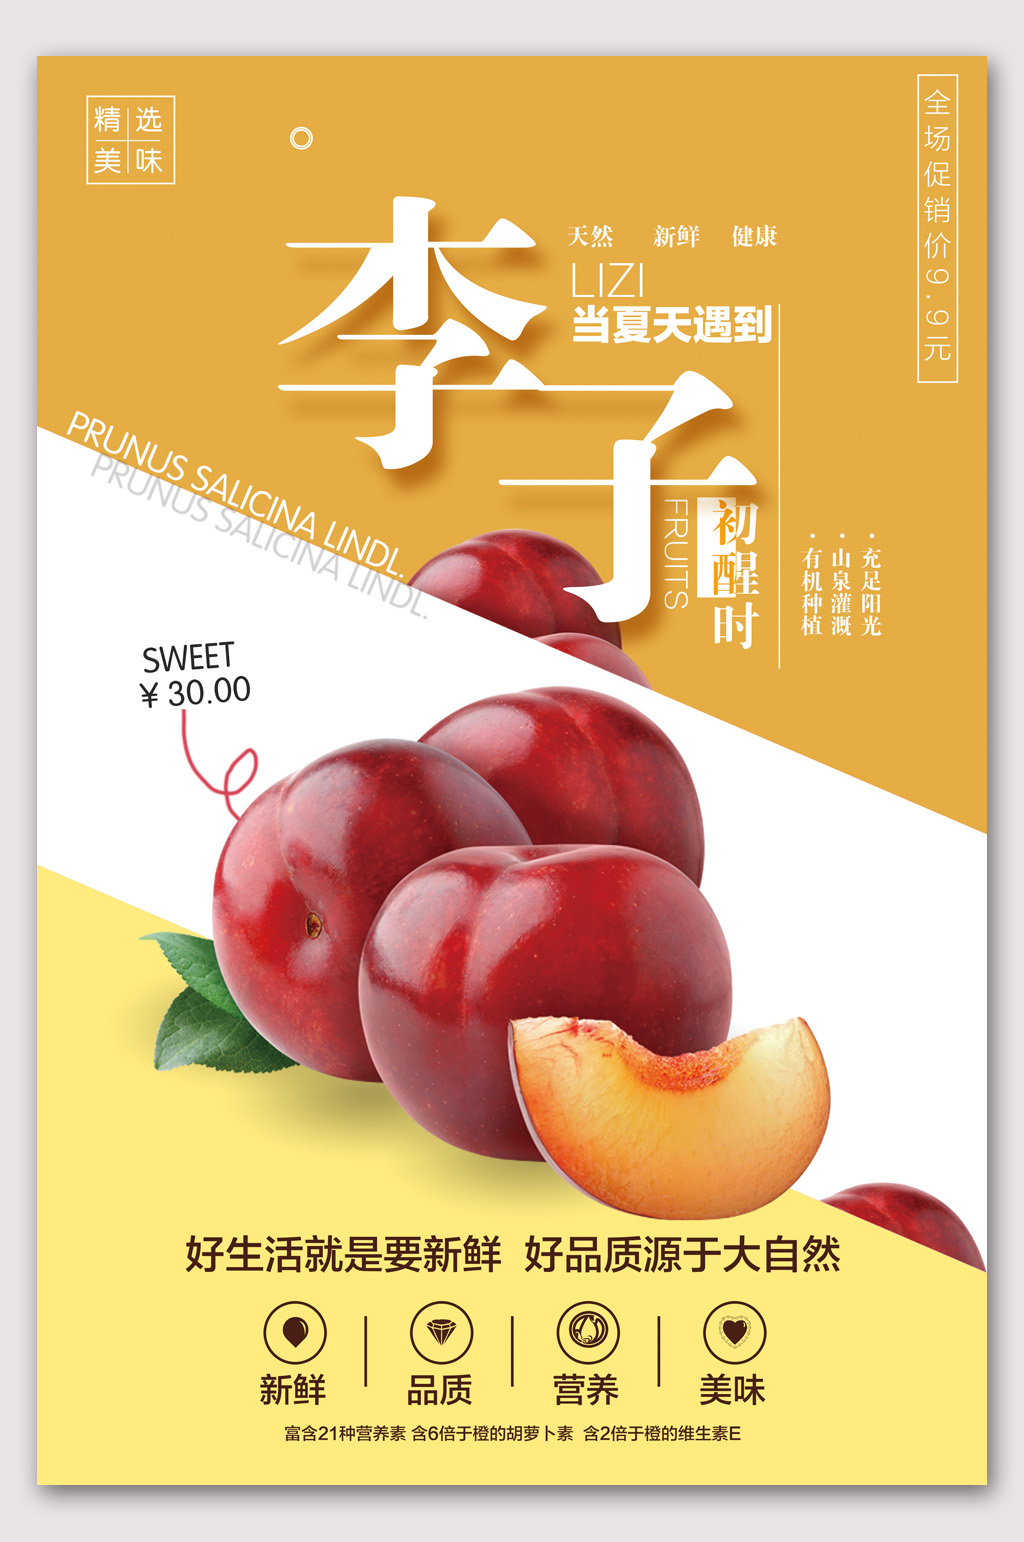 水果户外海报素材免费下载,本作品是由山寨宝宝上传的原创平面广告